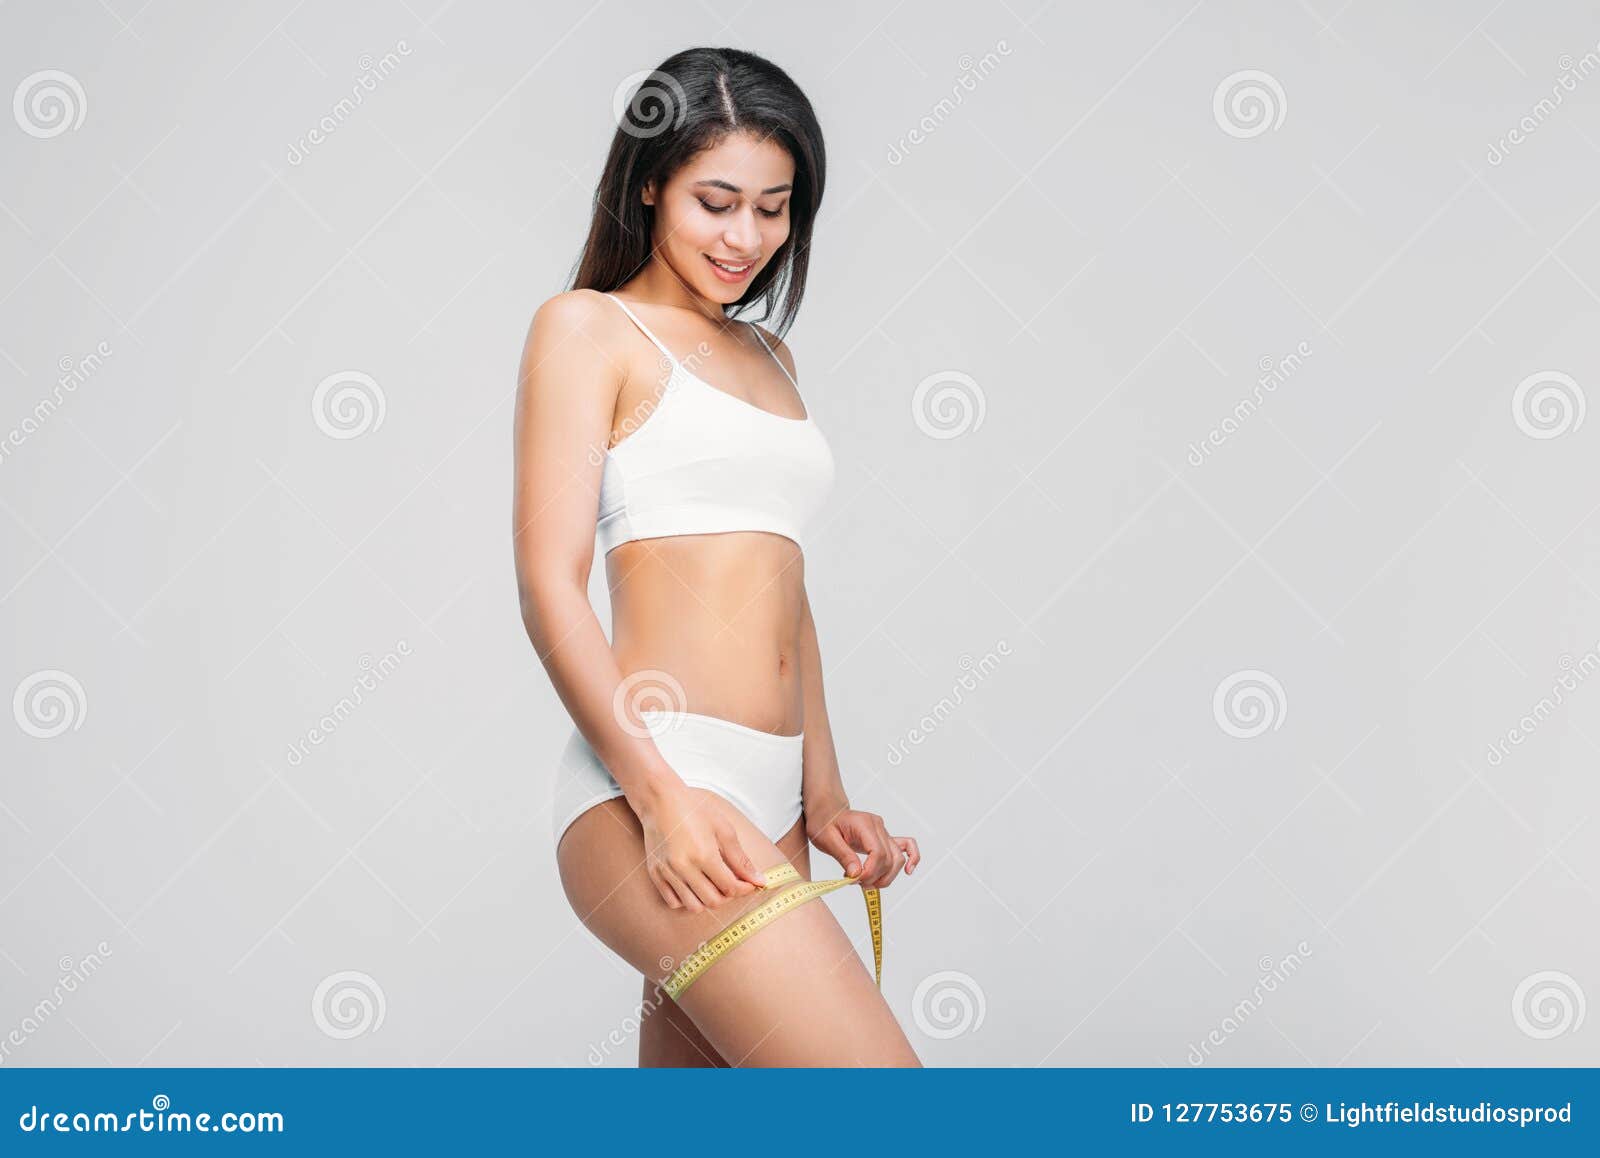 https://thumbs.dreamstime.com/z/beautiful-slim-african-american-girl-underwear-measuring-her-leg-beautiful-slim-african-american-girl-underwear-measuring-127753675.jpg